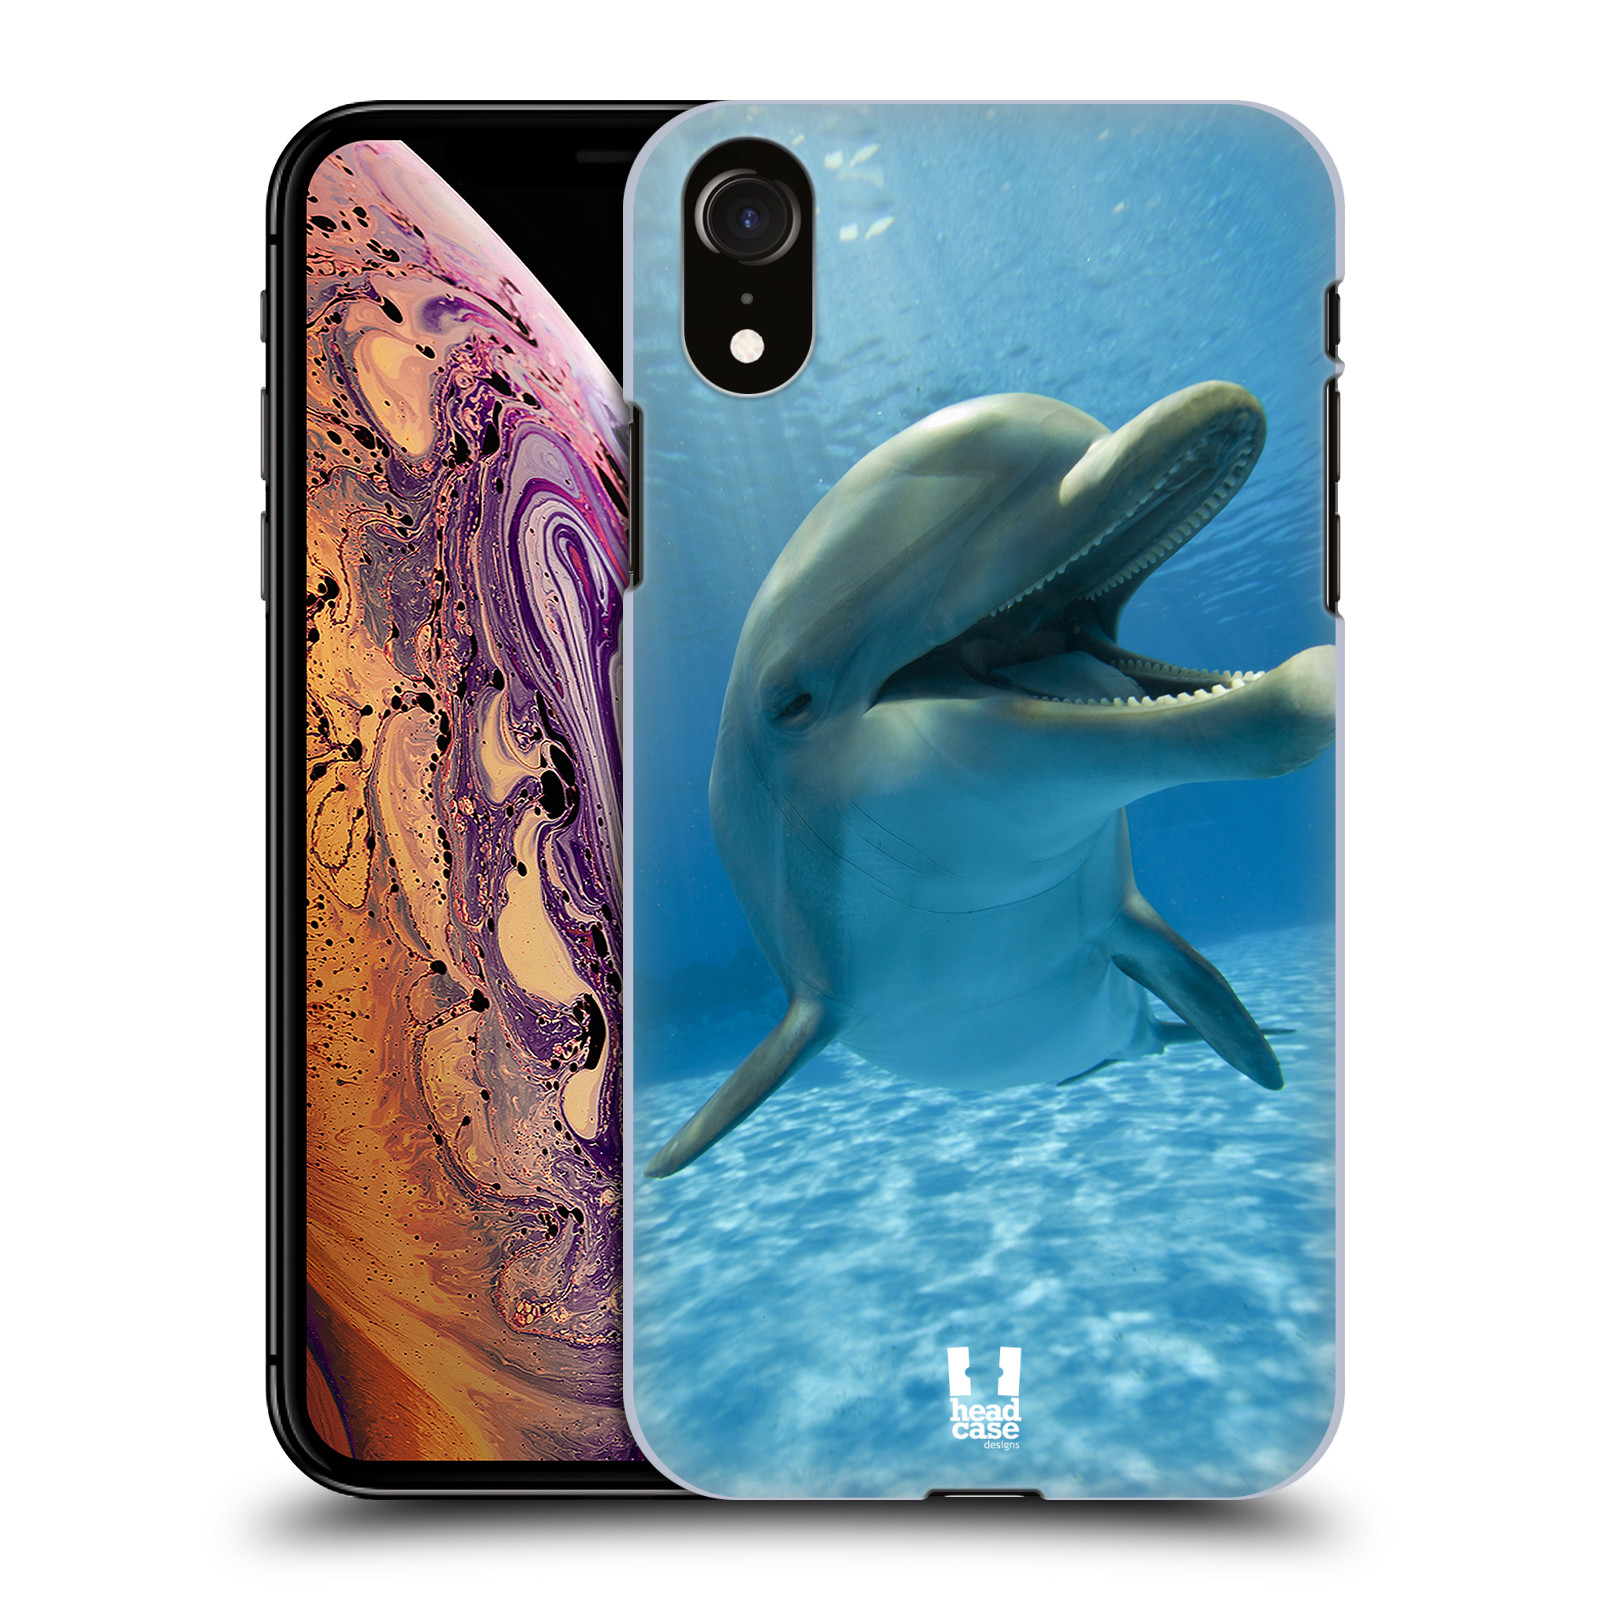 Zadní obal pro mobil Apple Iphone XR - HEAD CASE - Svět zvířat delfín v moři